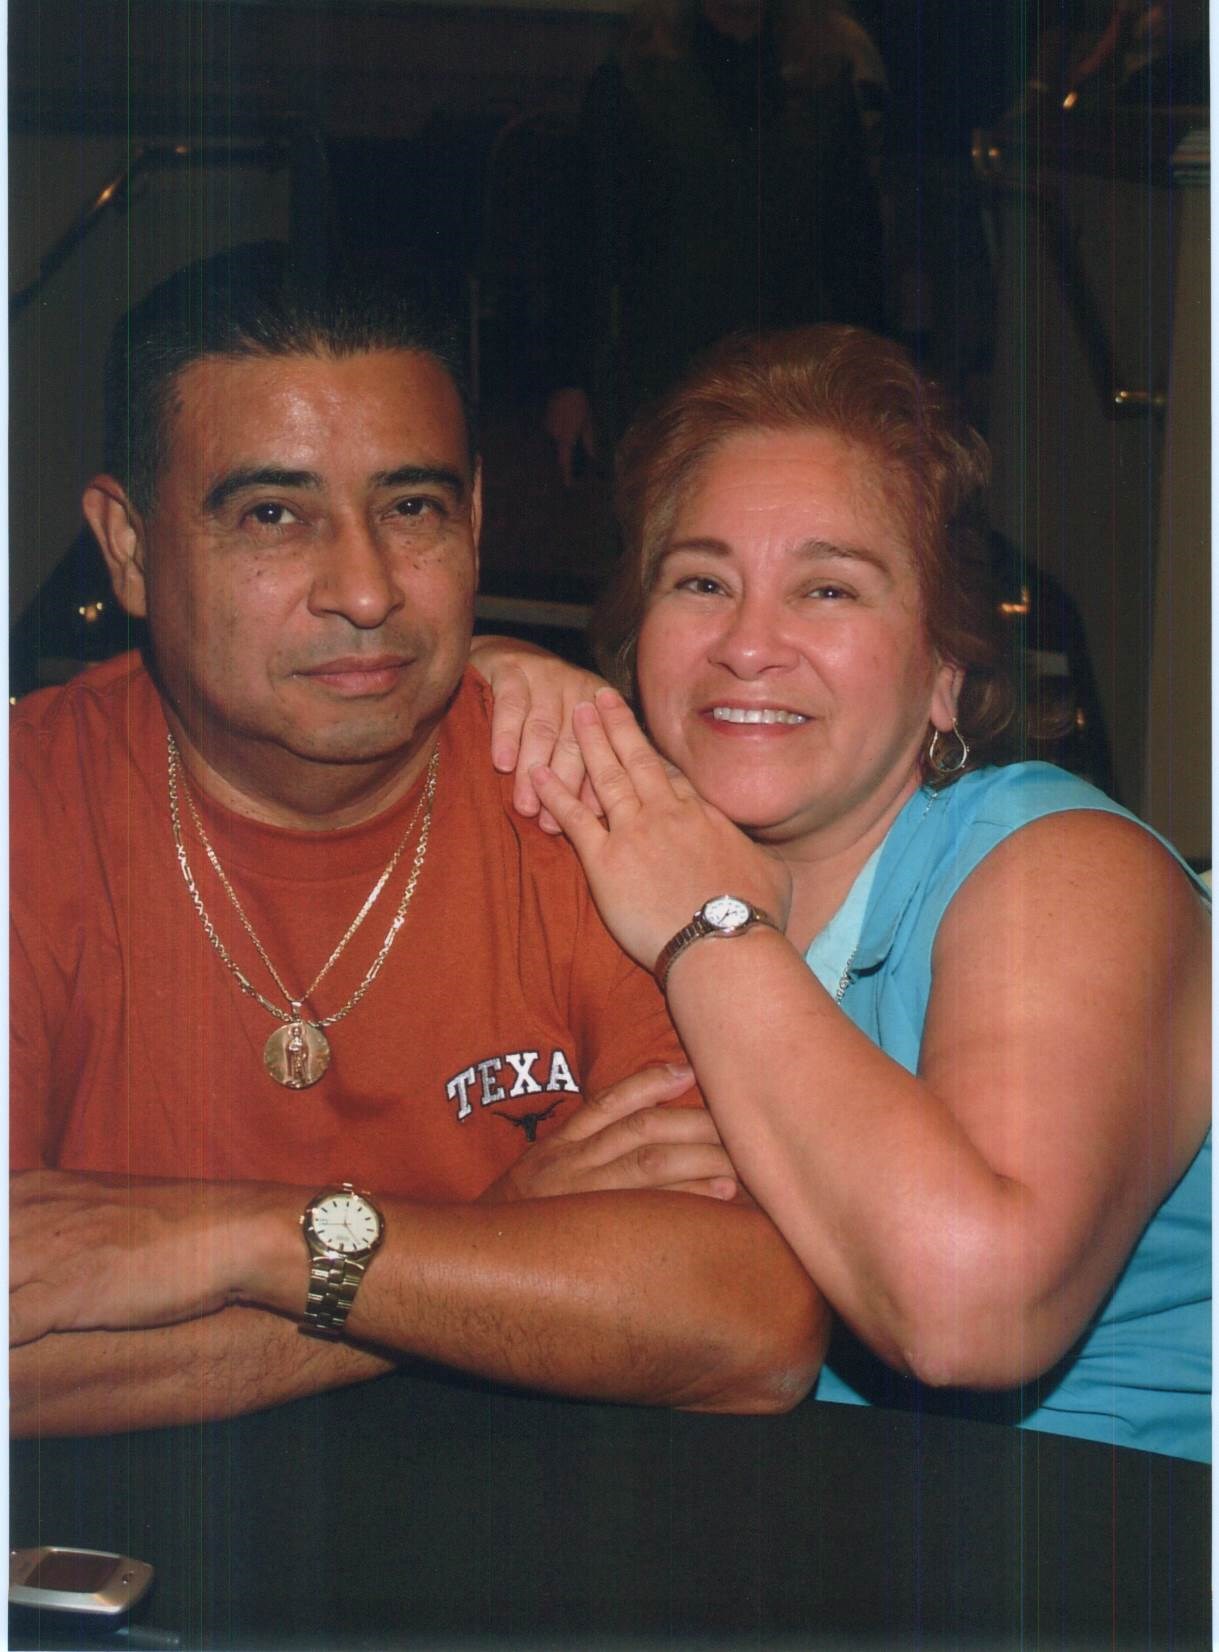 Obituary of Antonio Hernandez Jr. - 11/09/2019 - From the Family